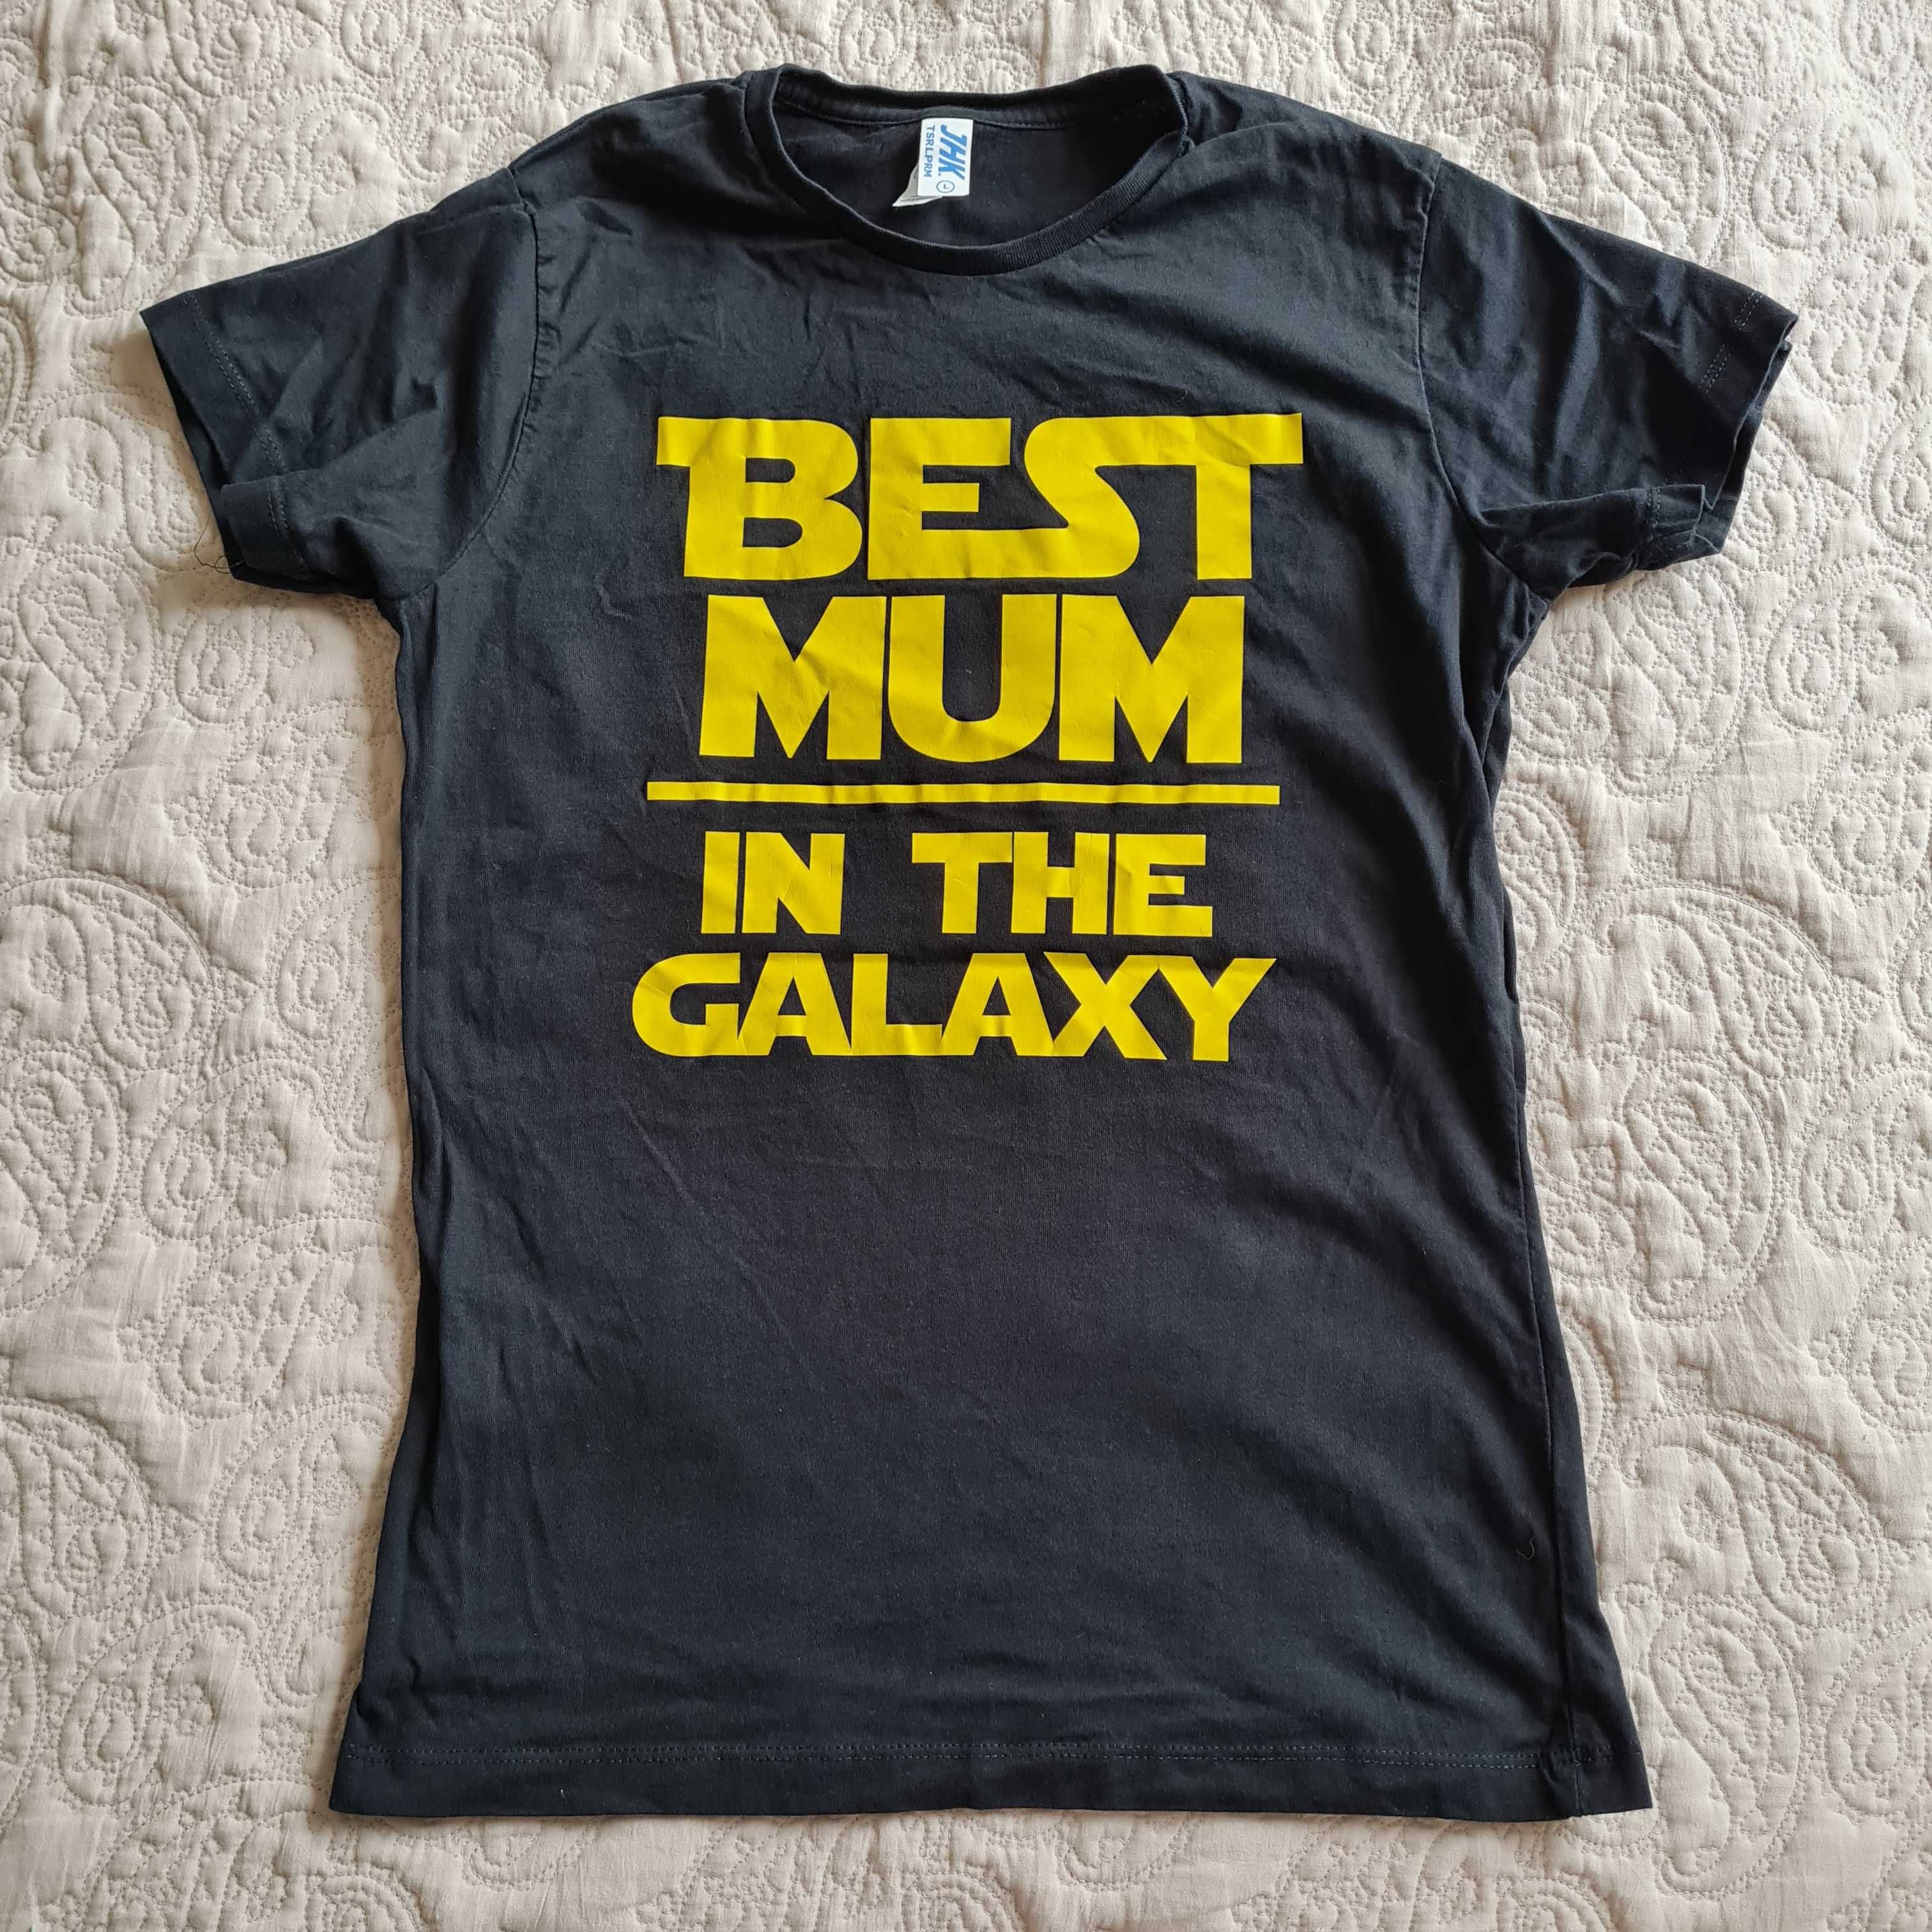 Best mum i the galaxy bluzka koszulka t-shirt czarny z napisem S 36